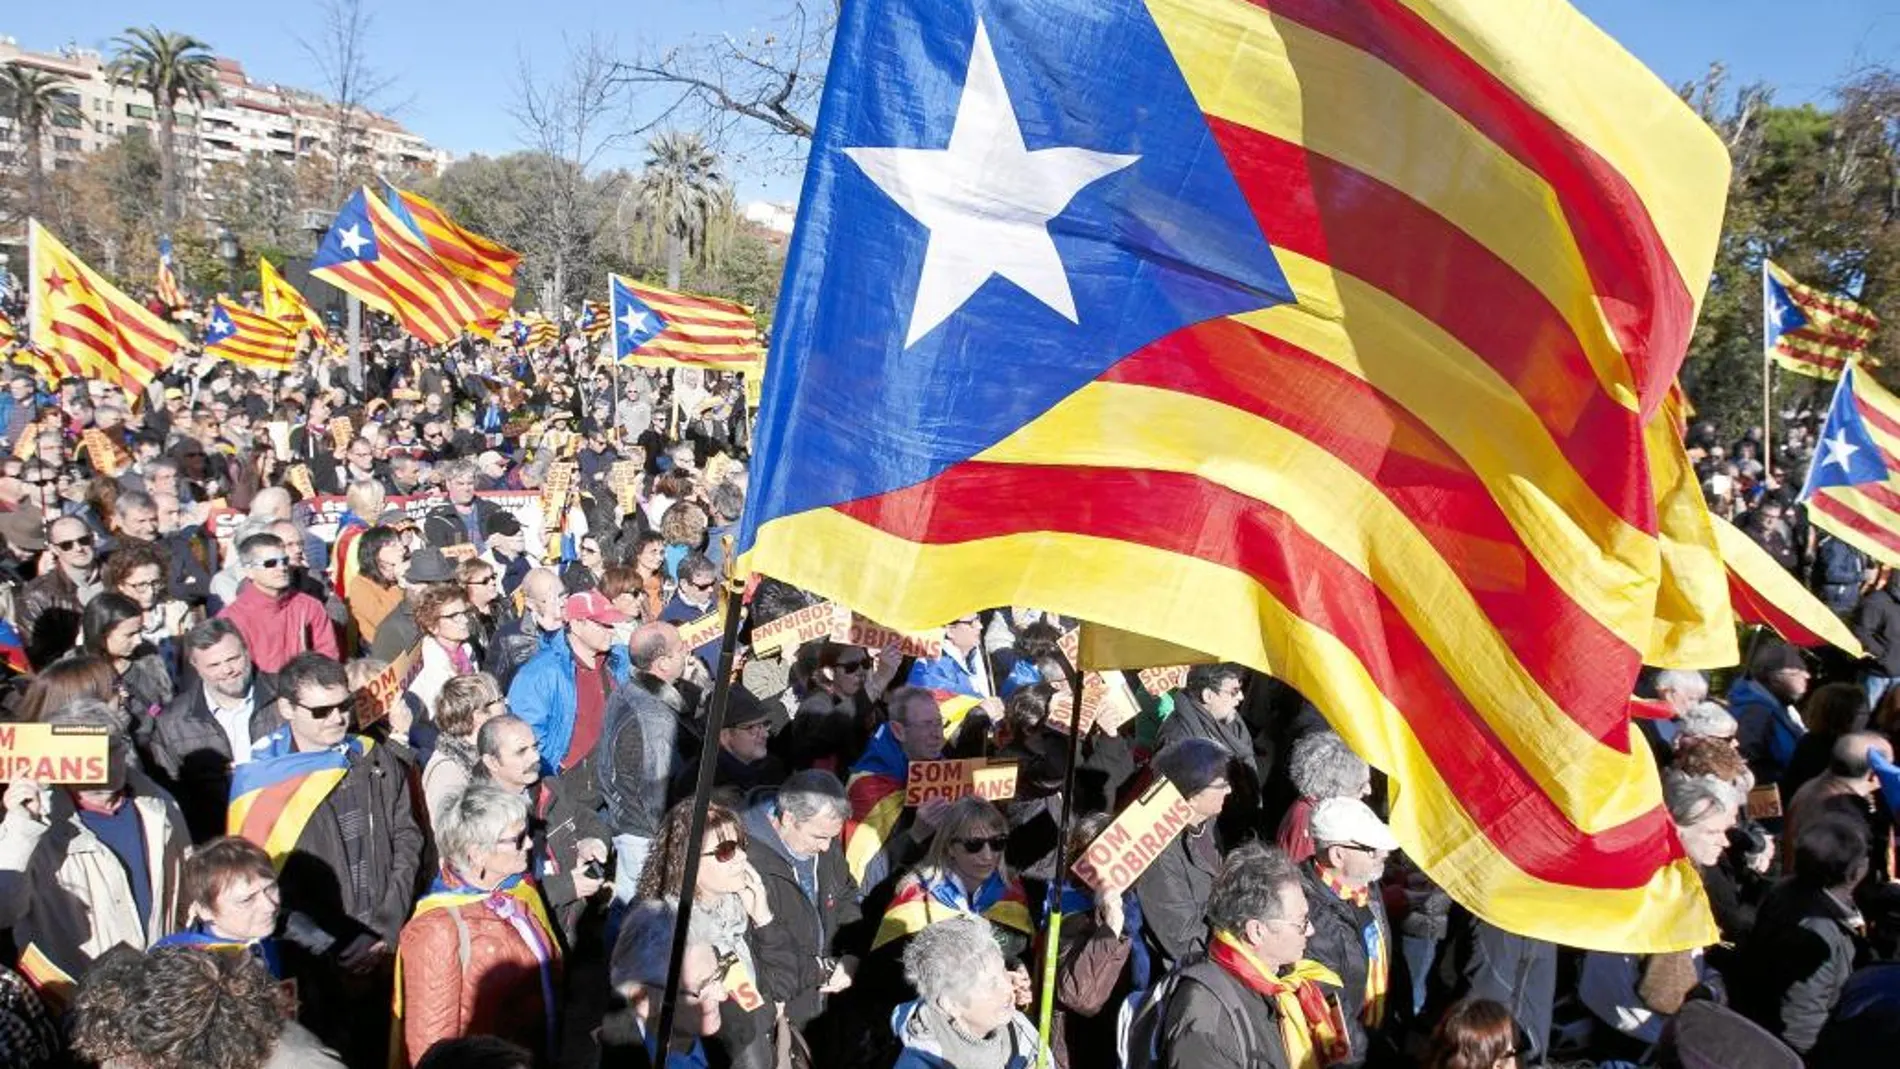 La Asamblea Nacional Catalana reunirá hoy a sus socios en Manresa para ratificar su hoja de ruta soberanista